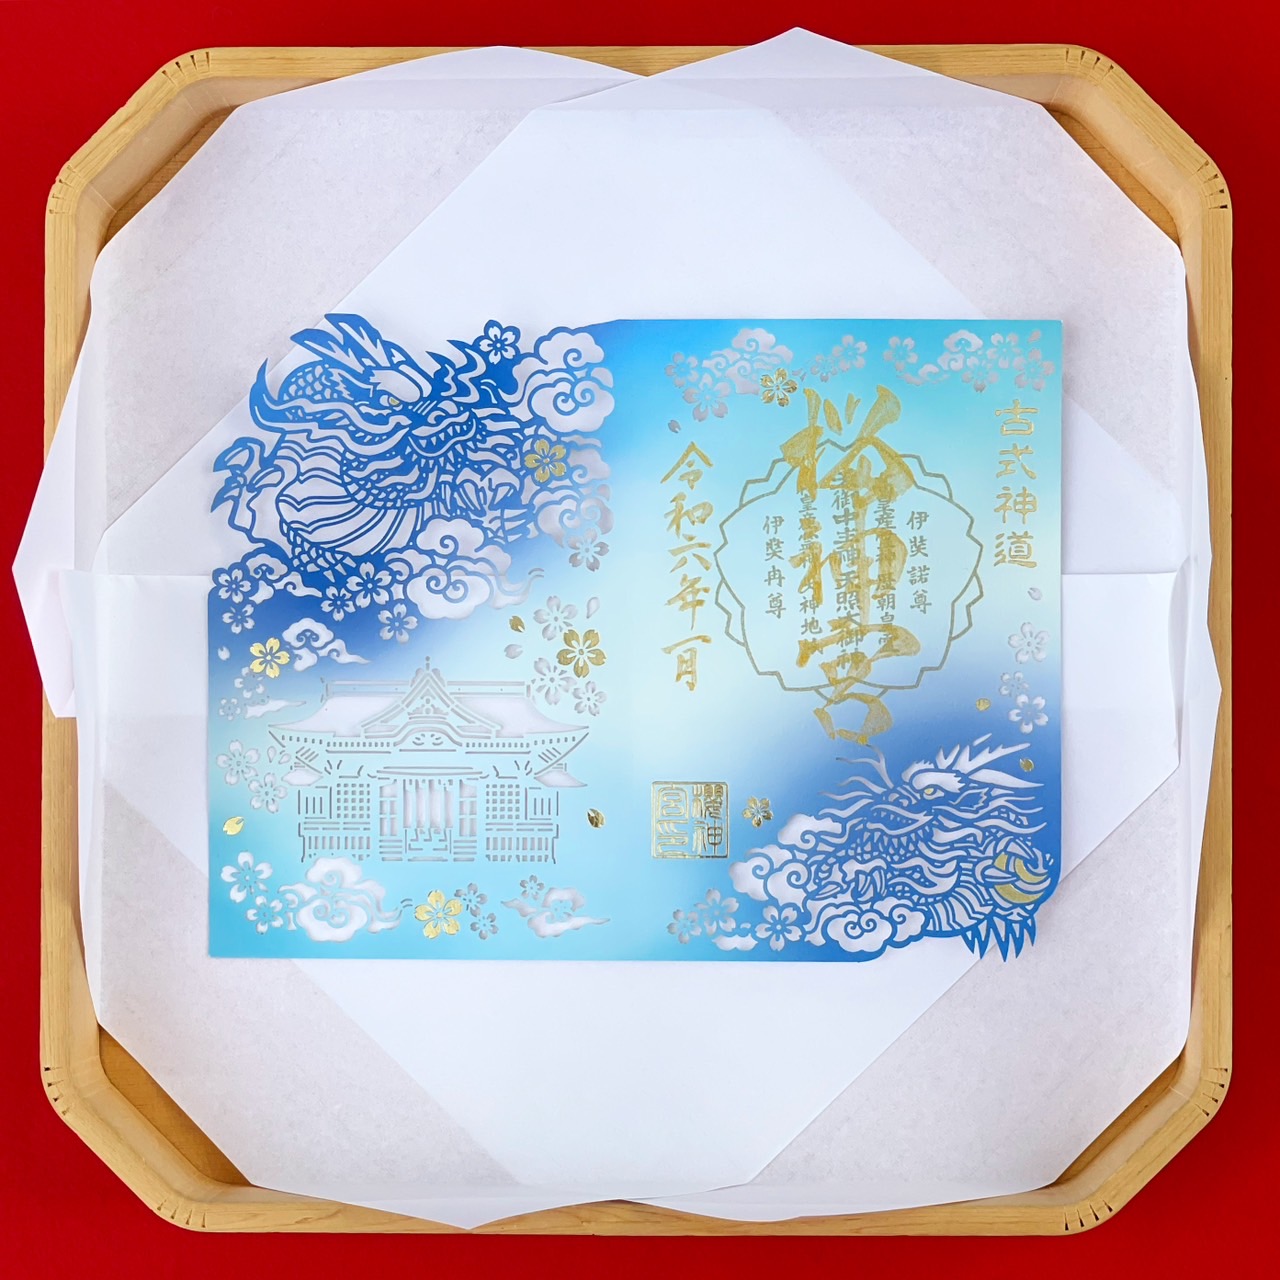 segel goshu yang diukir dari kertas dengan sepasang naga di sisi kiri dan kanannya